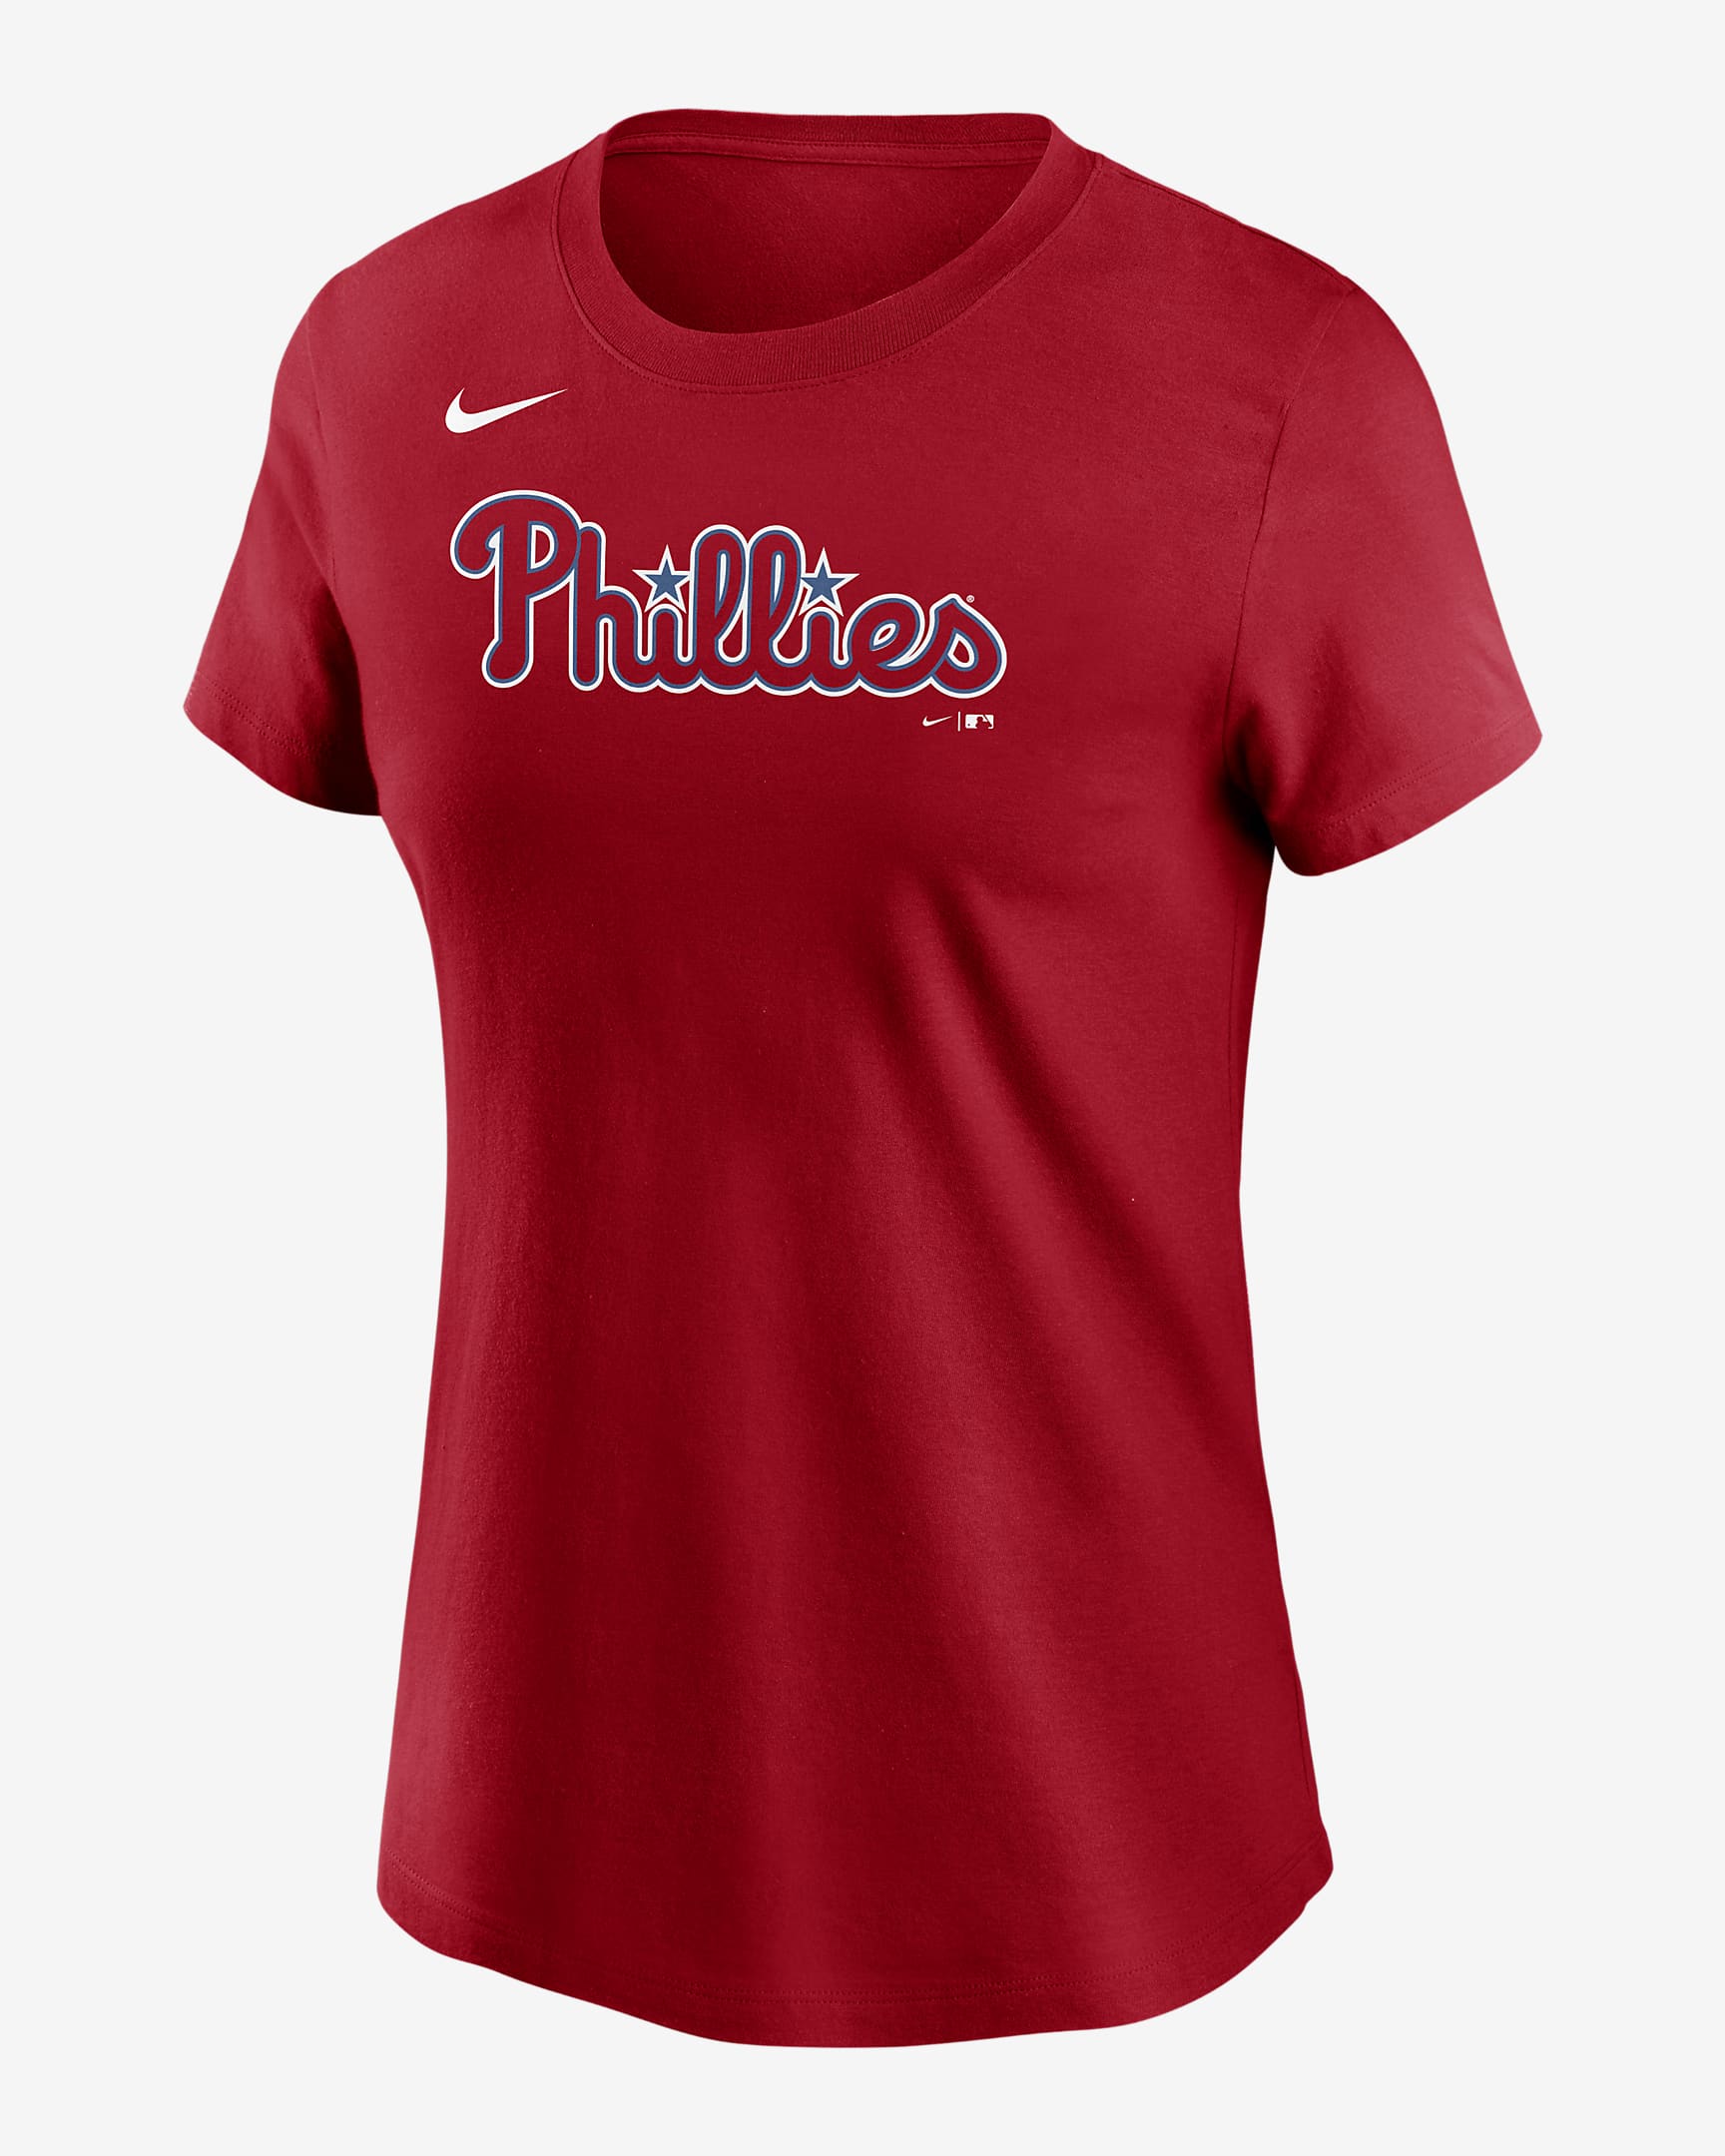 MLB Philadelphia Phillies (JT Realmuto) Women's T-Shirt. Nike.com